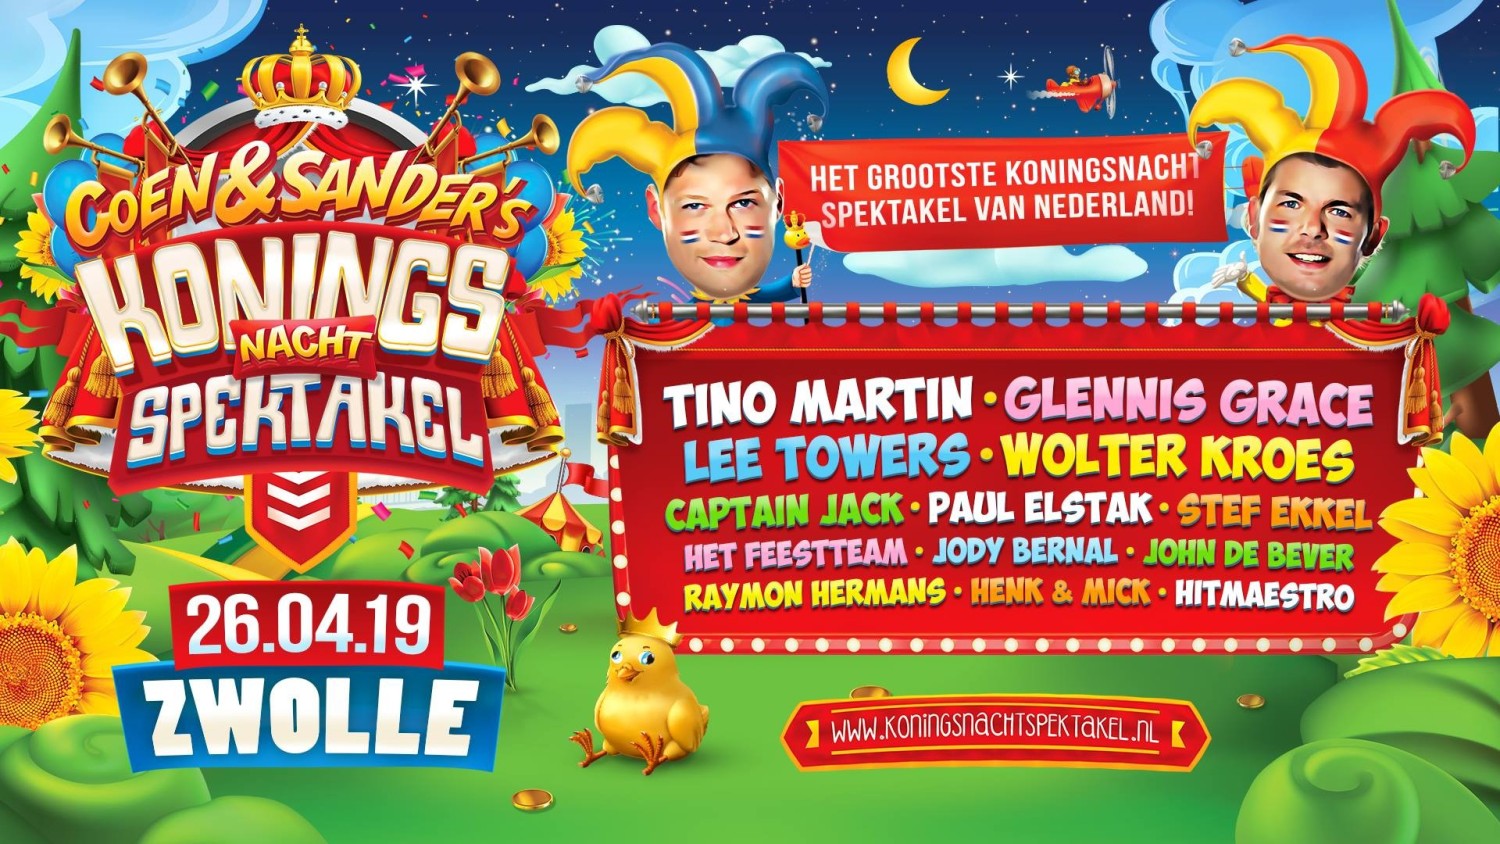 Party nieuws: Het grootste Koningsnacht Spektakel van Nederland!